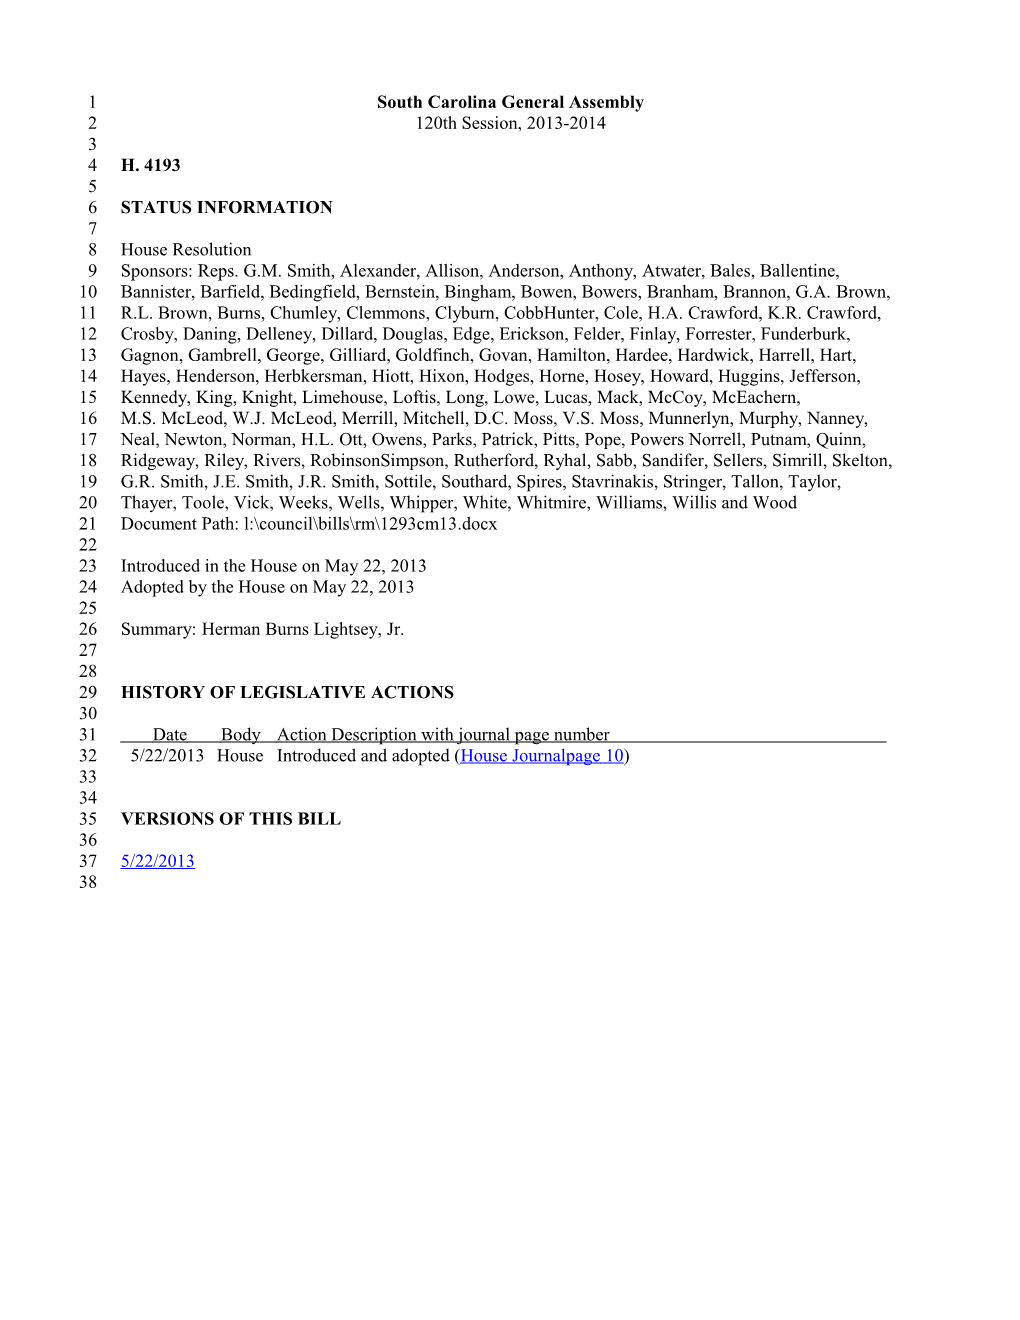 2013-2014 Bill 4193: Herman Burns Lightsey, Jr. - South Carolina Legislature Online